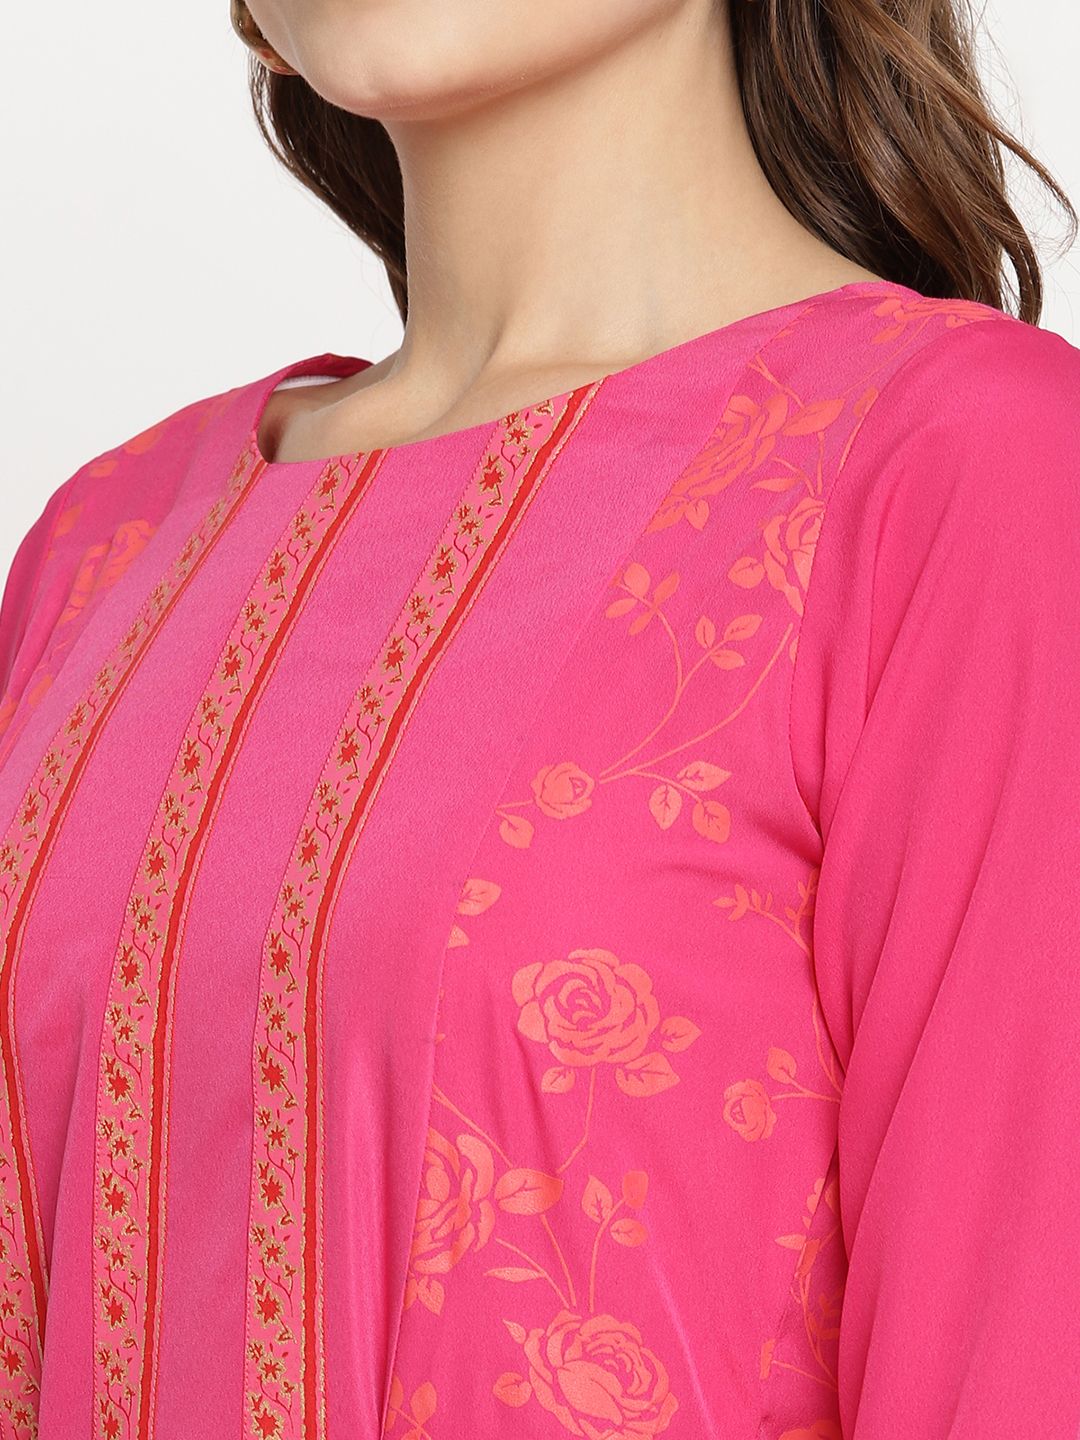 Ahalyaa Dark Pink Crepe Khari Print Dress For Women